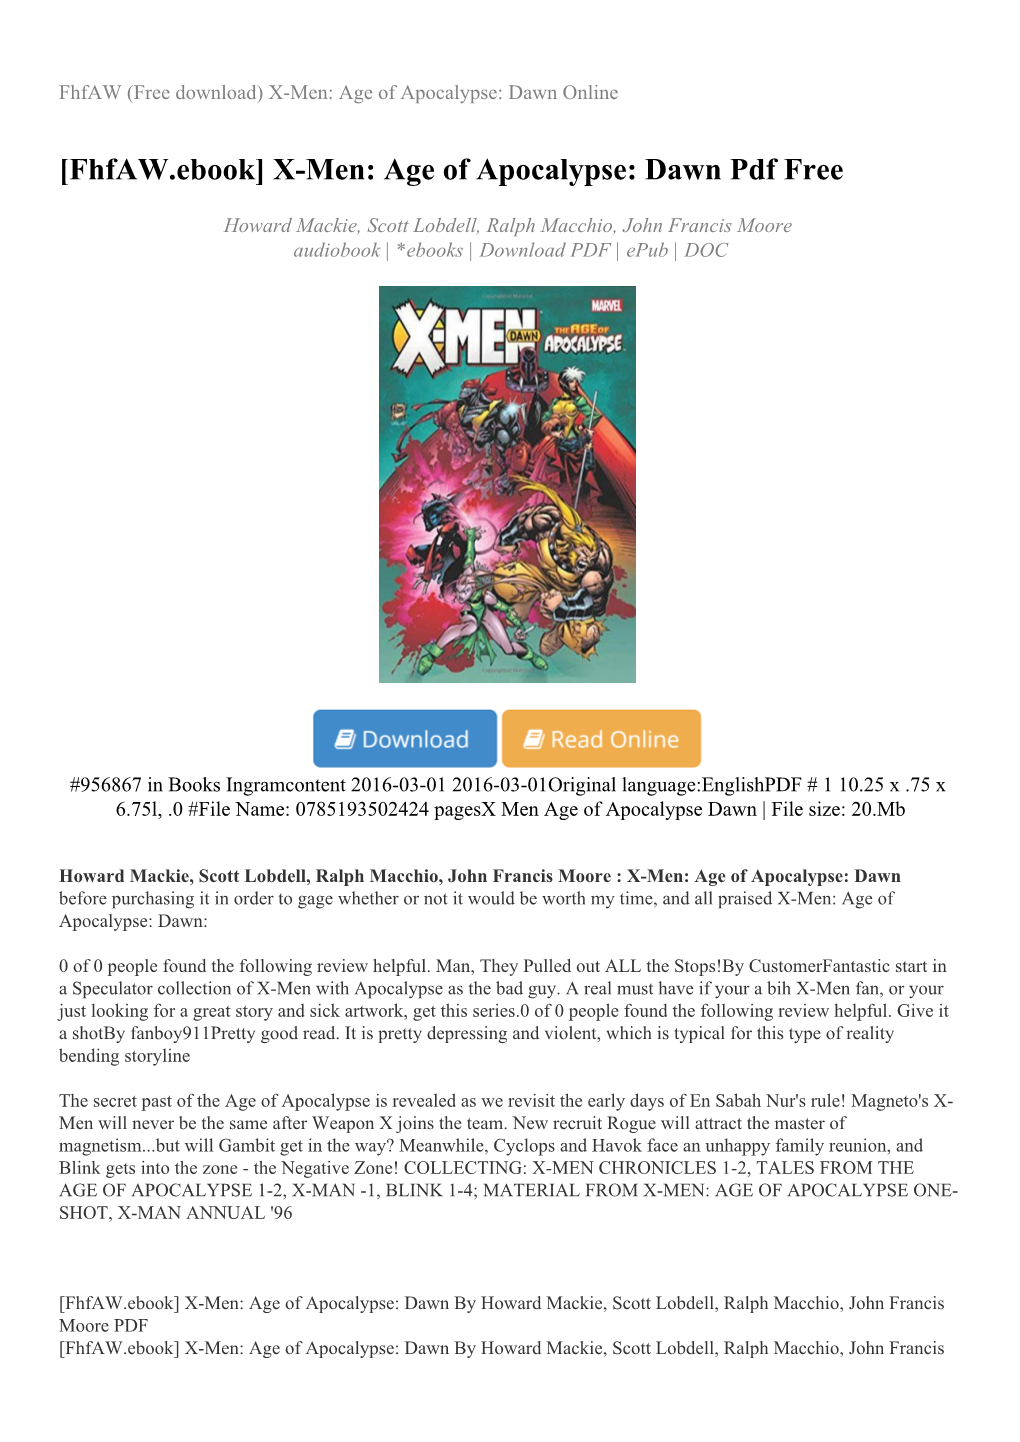 [Fhfaw.Ebook] X-Men: Age of Apocalypse: Dawn Pdf Free